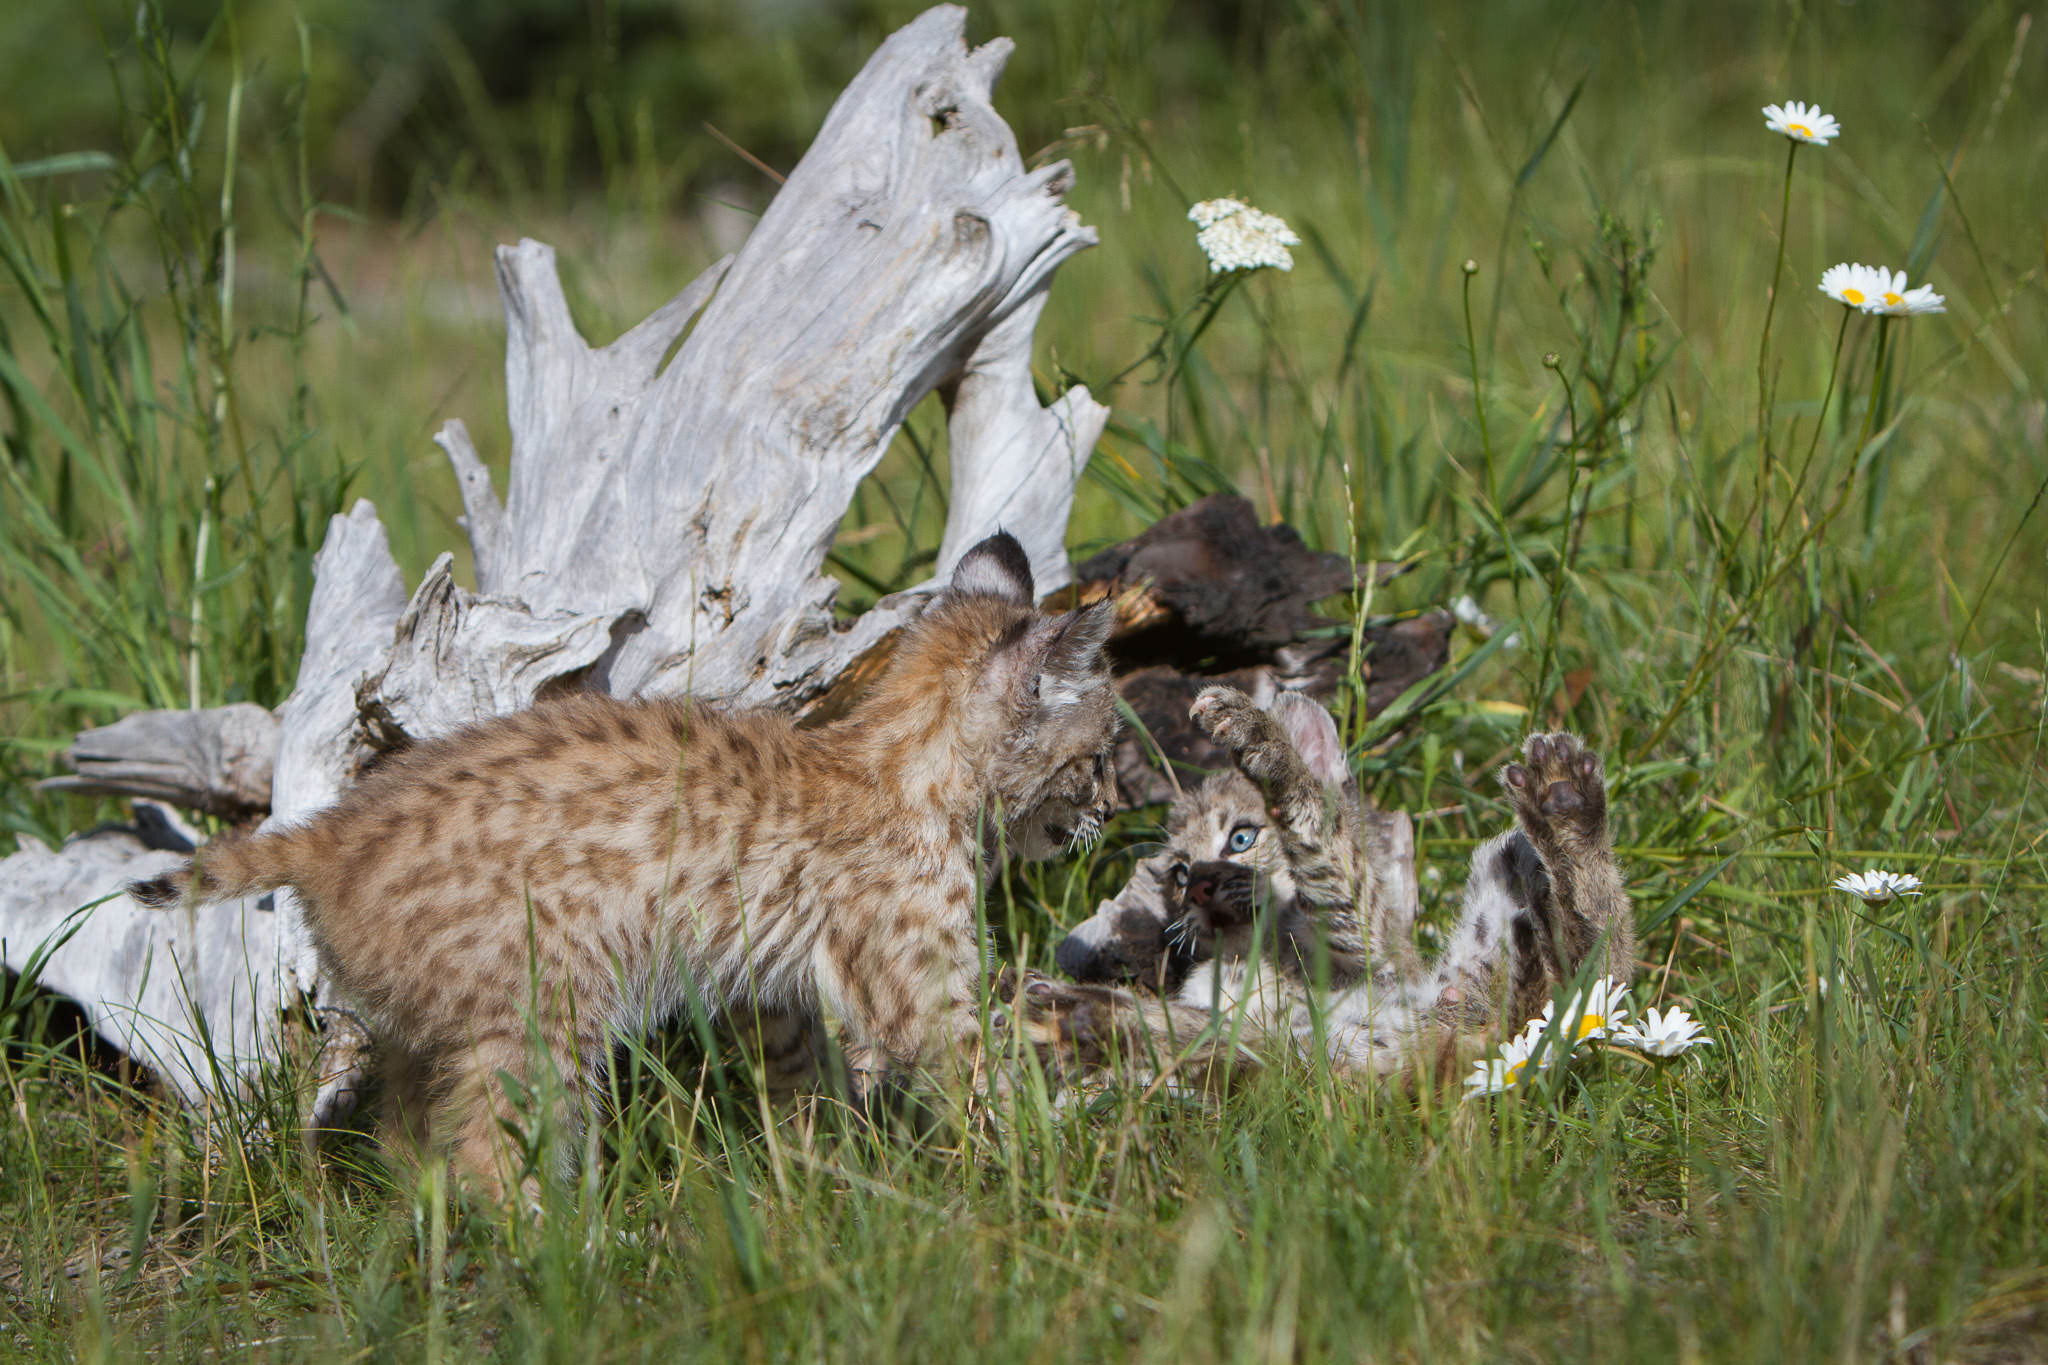  Bobcat kittens  Western Montana  #20130708_0268-2 